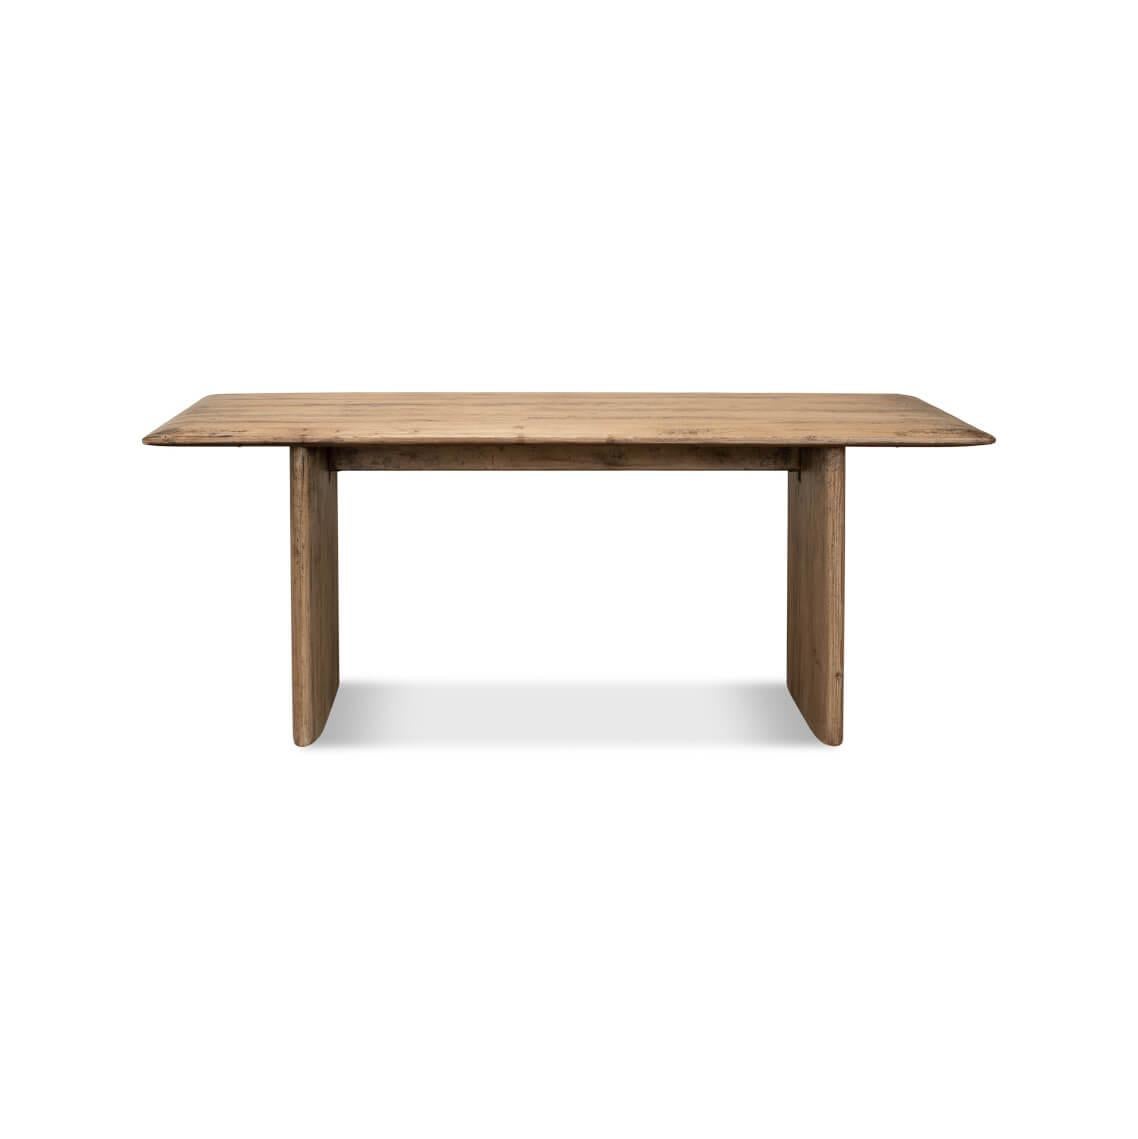 Eine harmonische Mischung aus Schlichtheit und Wärme für Ihren Essbereich. Dieser Tisch hat eine natürliche Holzoberfläche aus aufgearbeiteter Kiefer mit einer reichen Maserung, die seine einzigartige Geschichte erzählt. Seine minimalistische